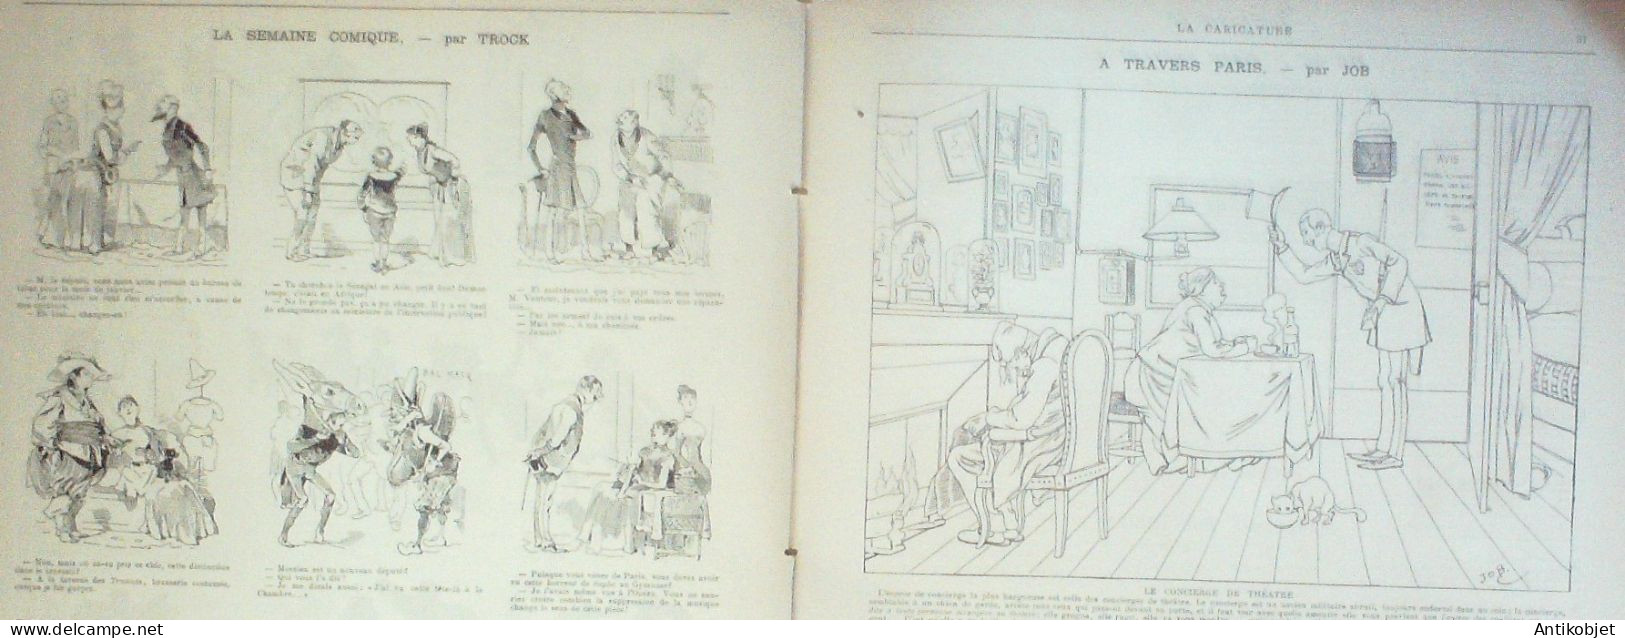 La Caricature 1886 N°317 Engagés Conditionnels Caran D'Ache Cabaret Puist-sans-vin Moron Trock Lorme Sorel - Revistas - Antes 1900